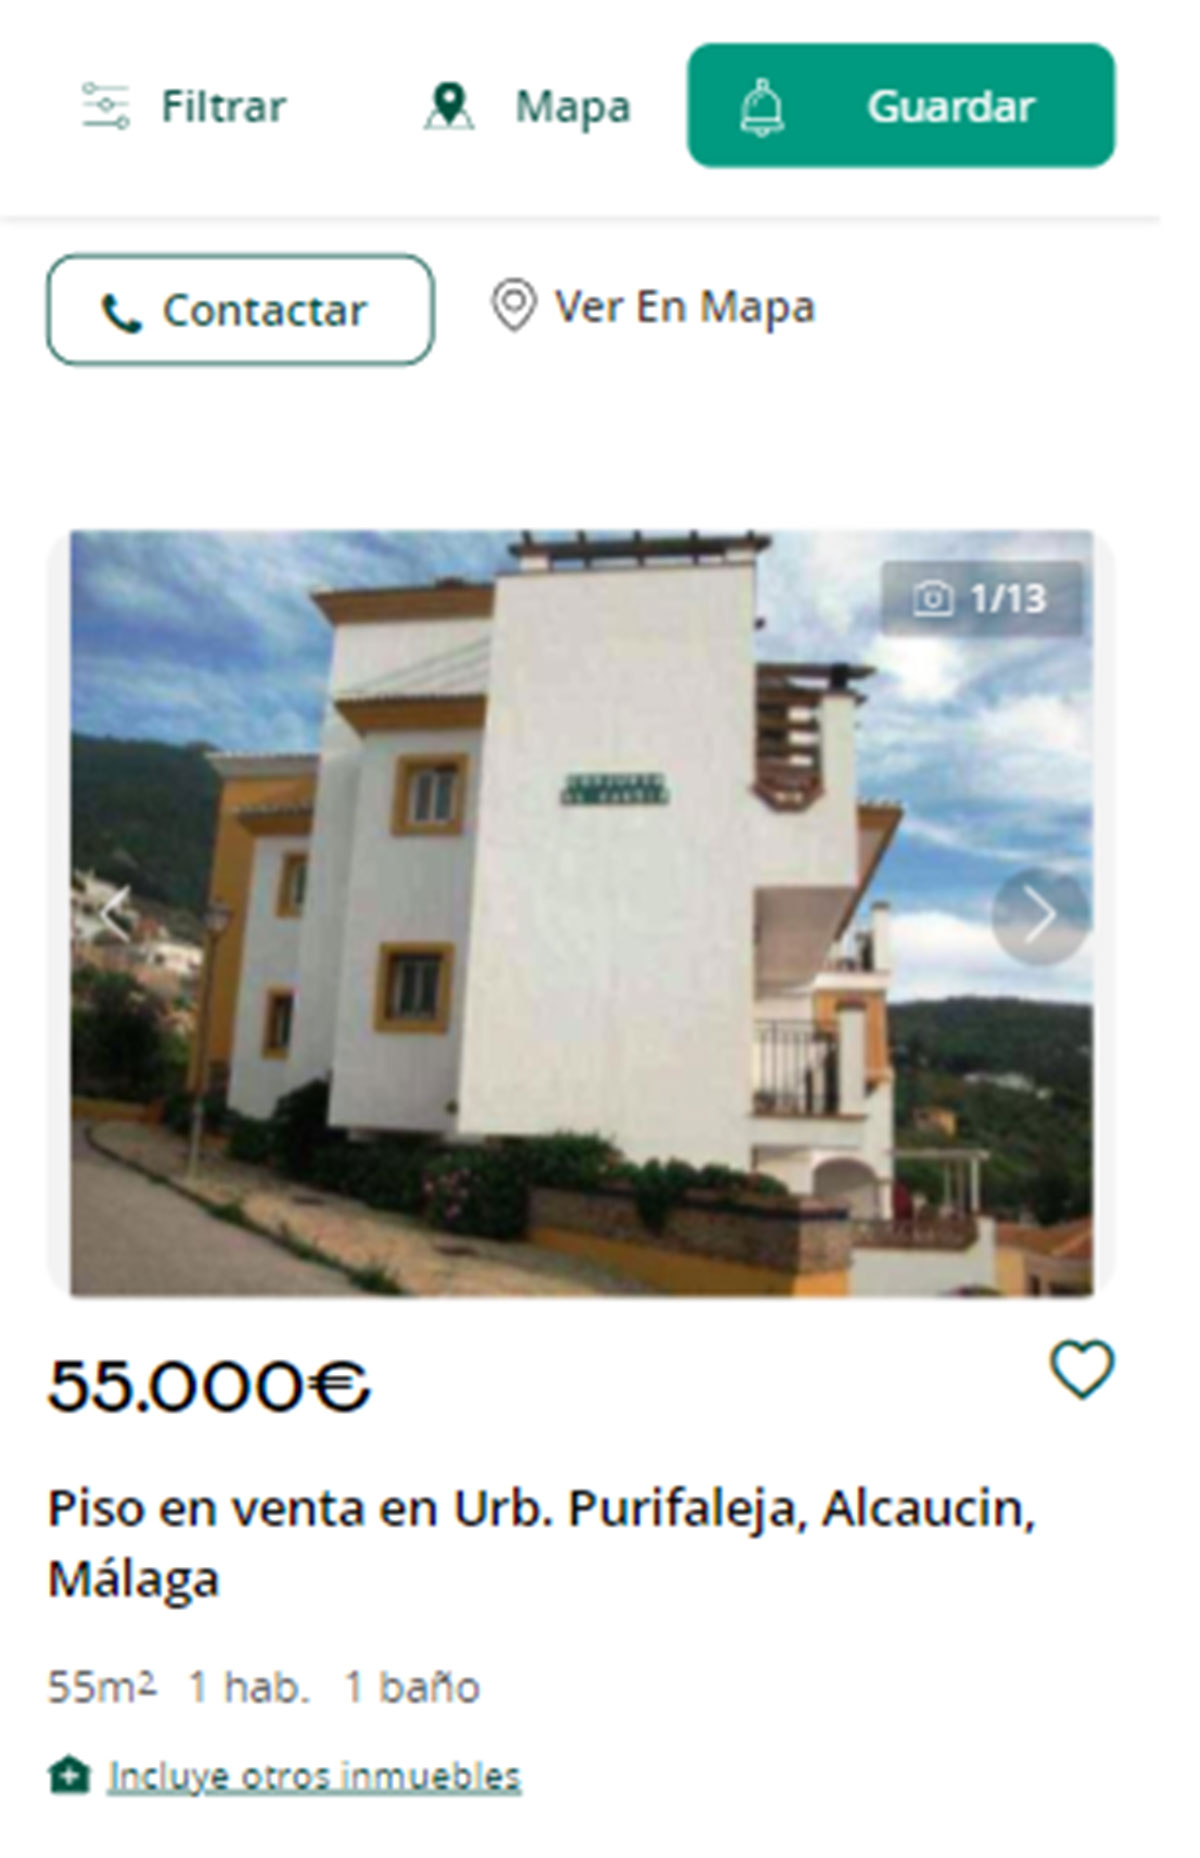 Piso a la venta en Málaga por 55.000 euros